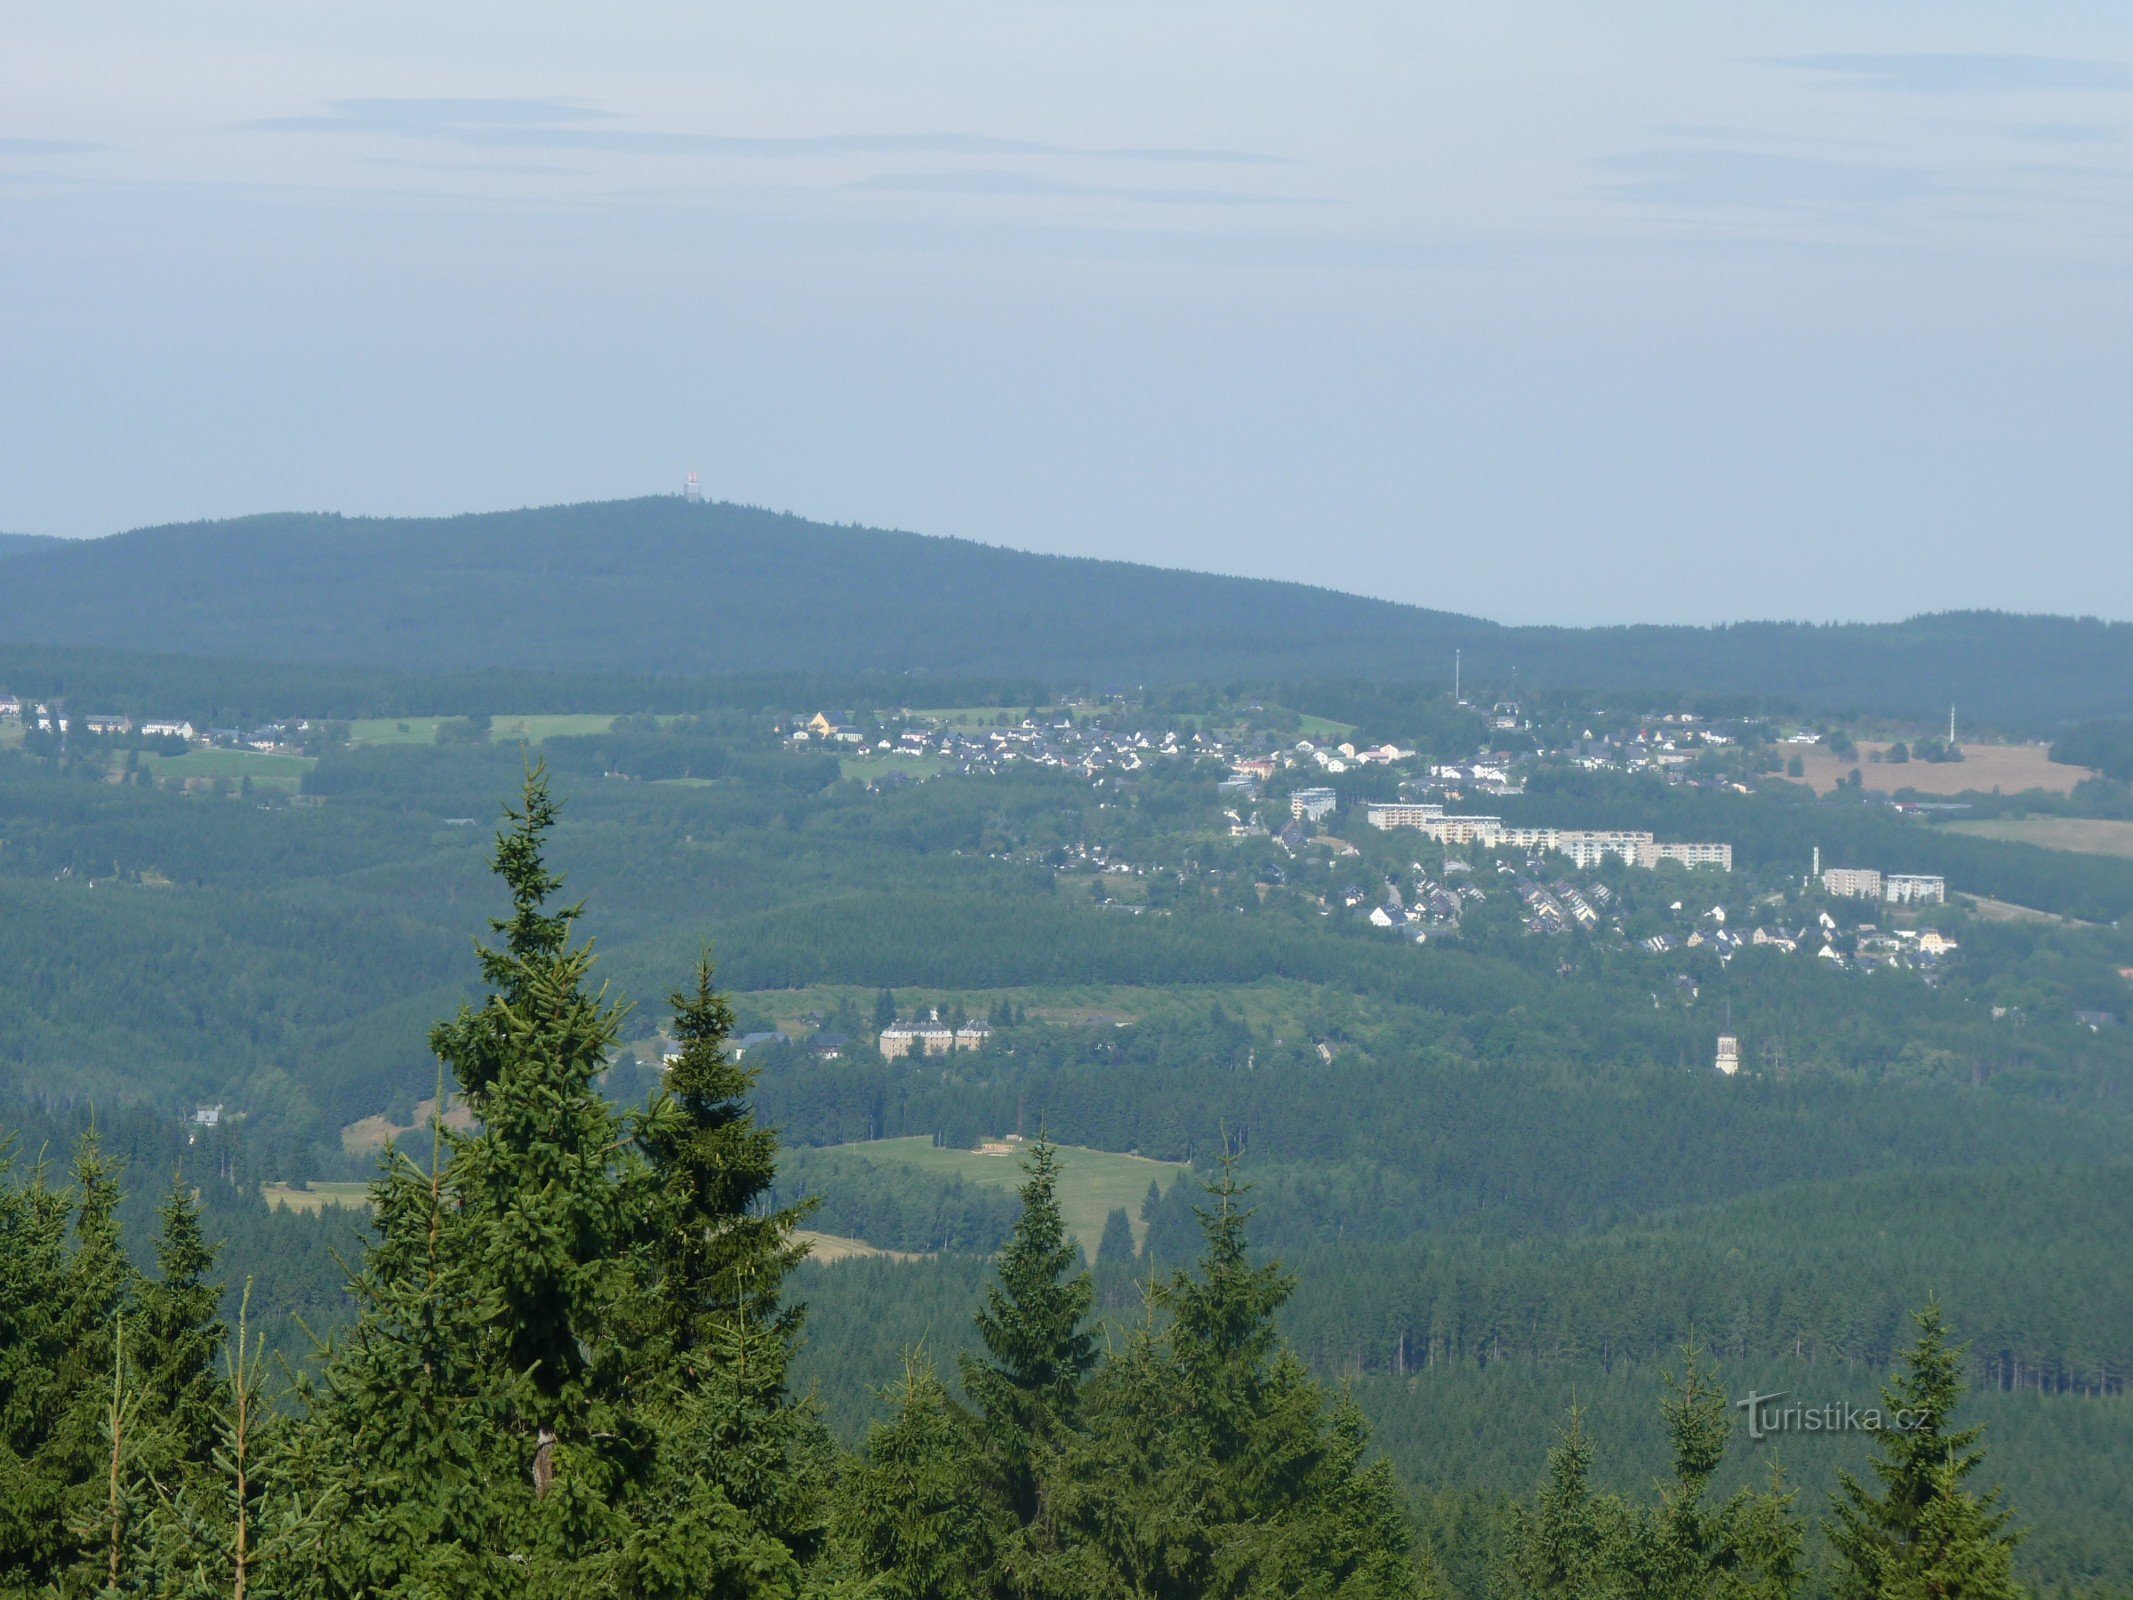 θέα από τον πύργο παρατήρησης στο γερμανικό λόφο Auersberg